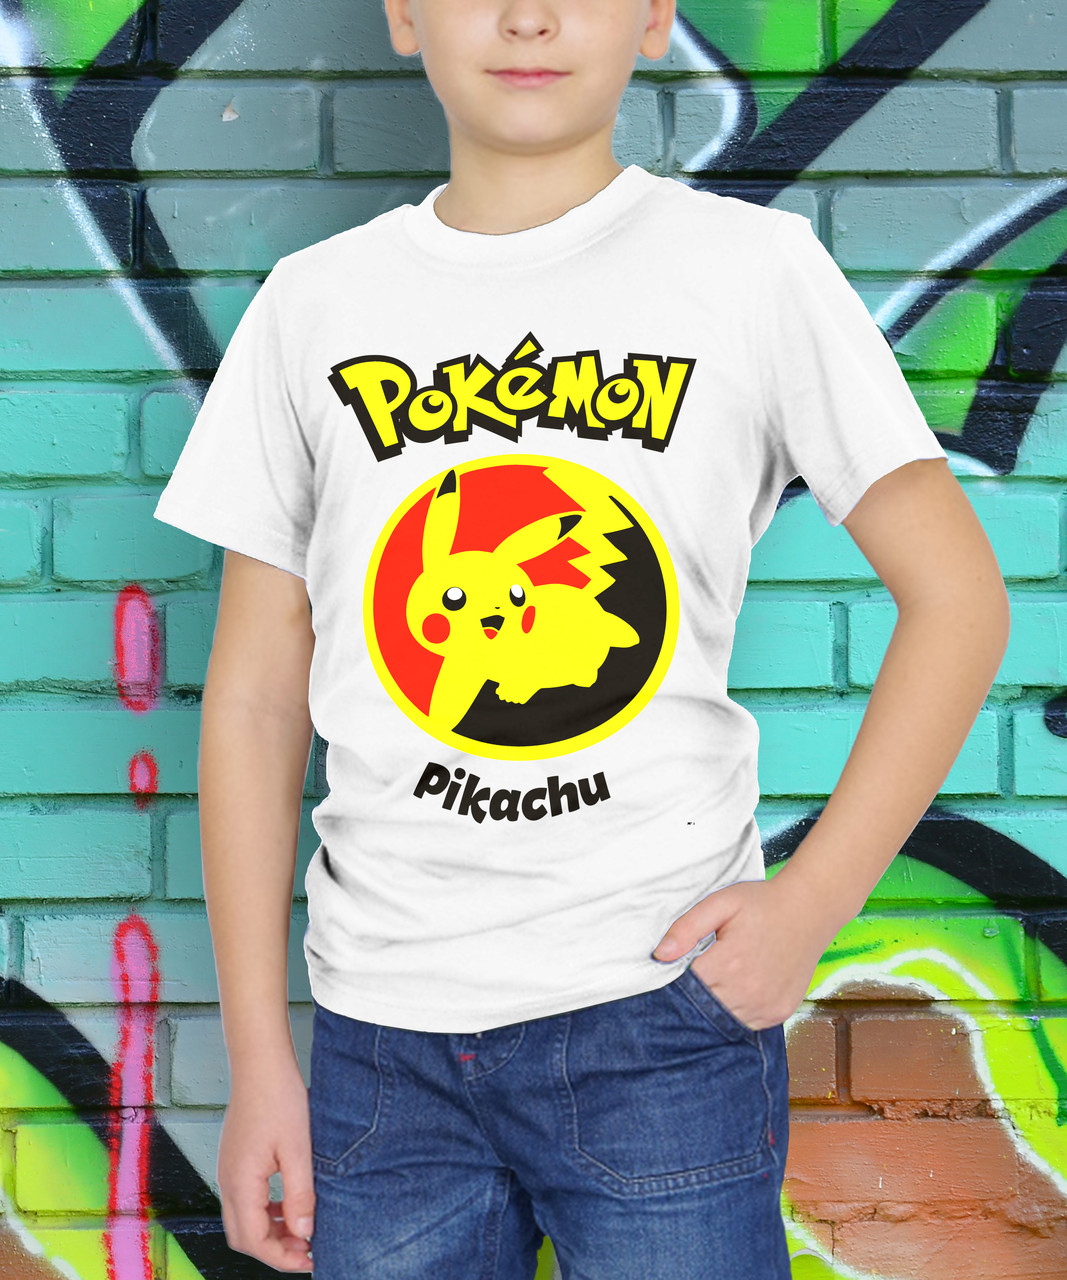 

Детская летняя футболка для мальчика хлопковая PIKACHU, лучший подарок ребенку